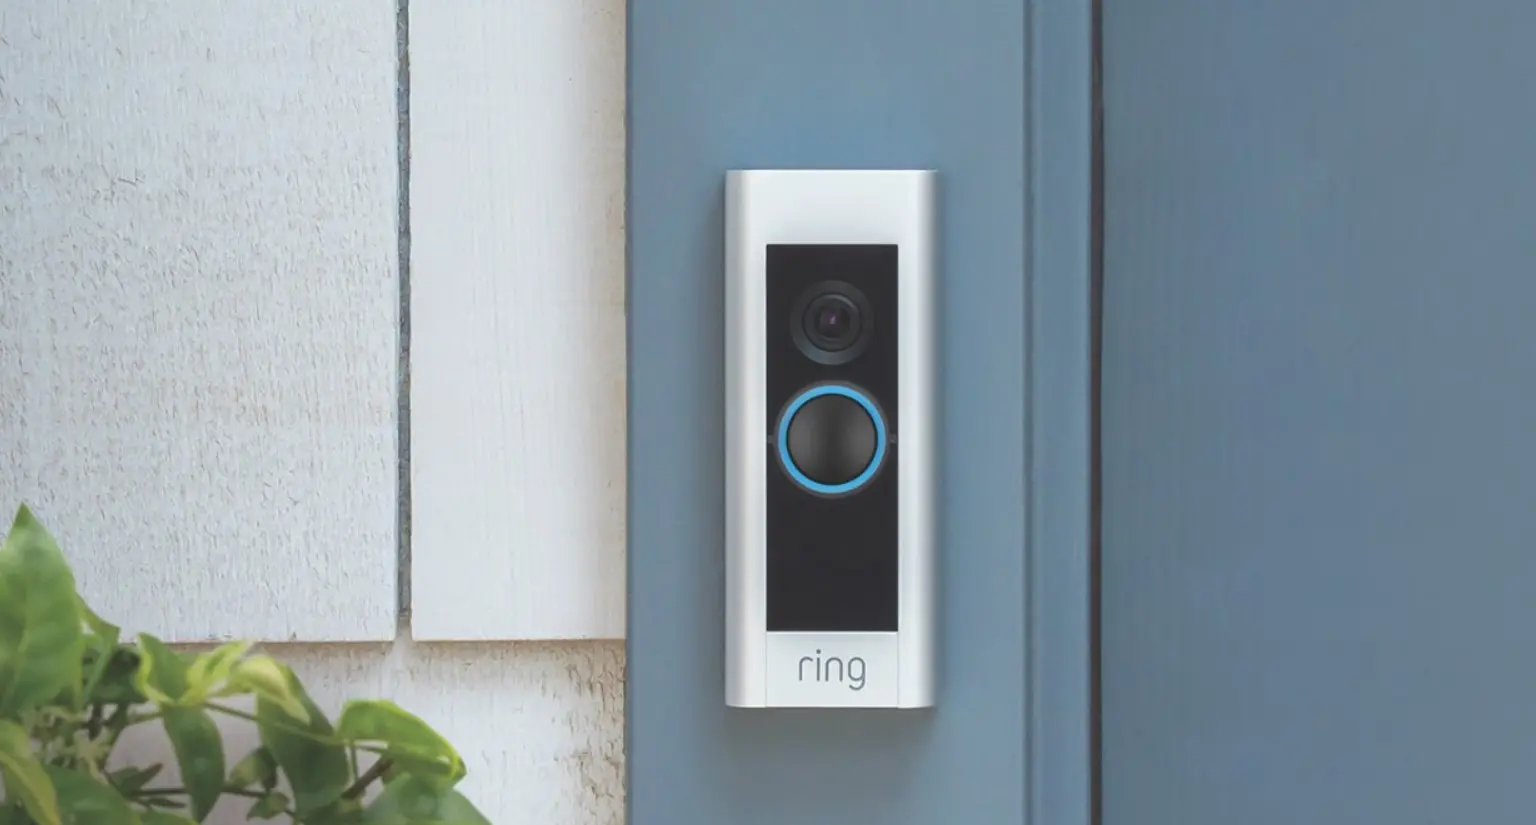 sonnette Ring intelligente sur une porte bleu